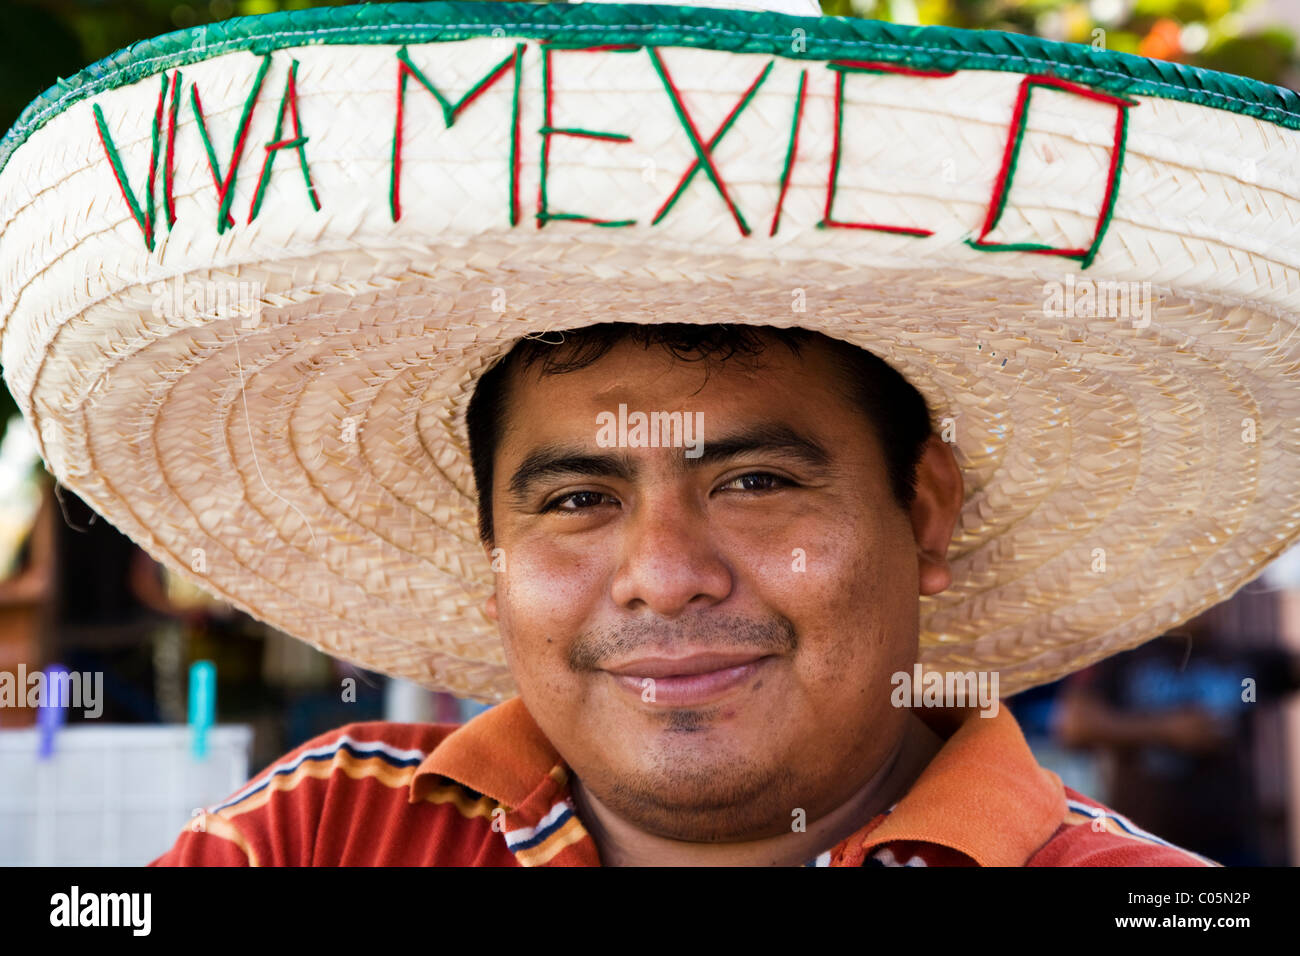 Ritratto di uomo messicano da Yucatan indossando un sombrero con Viva Messico su di esso, Progreso, Yucatan, Messico Foto Stock